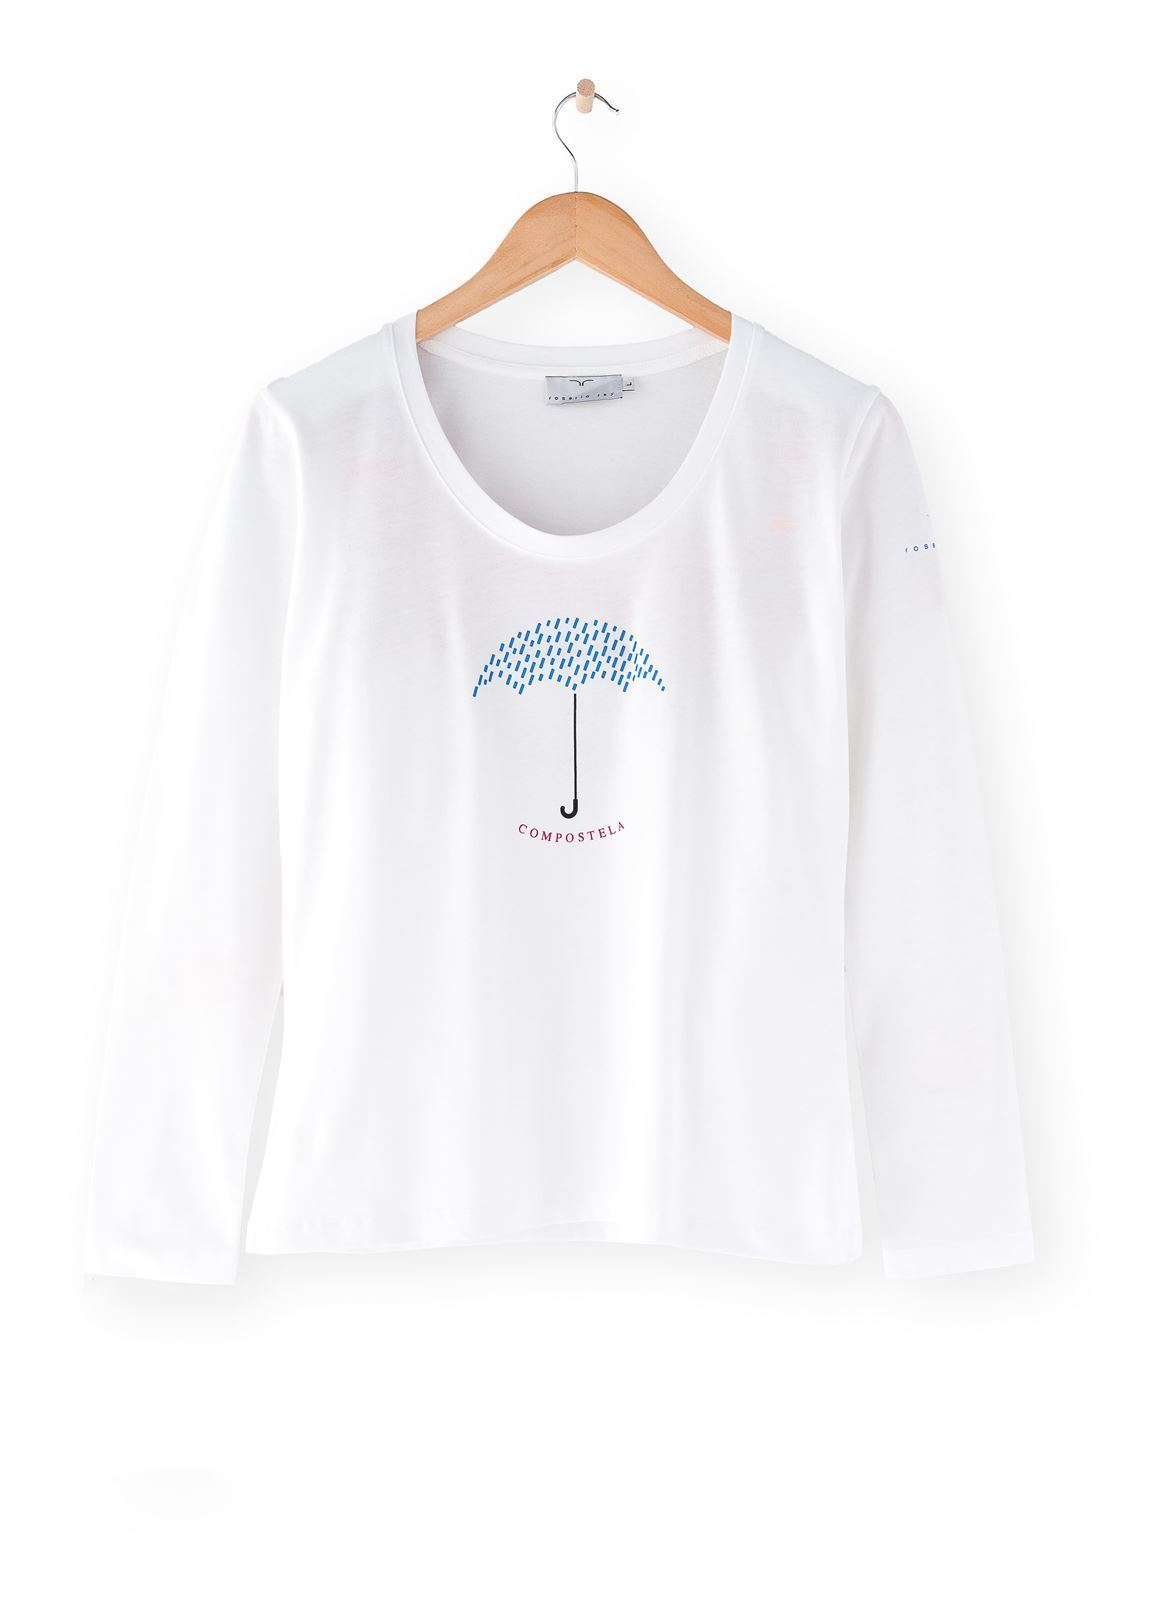 Camiseta Paraguas escote - Imagen 1